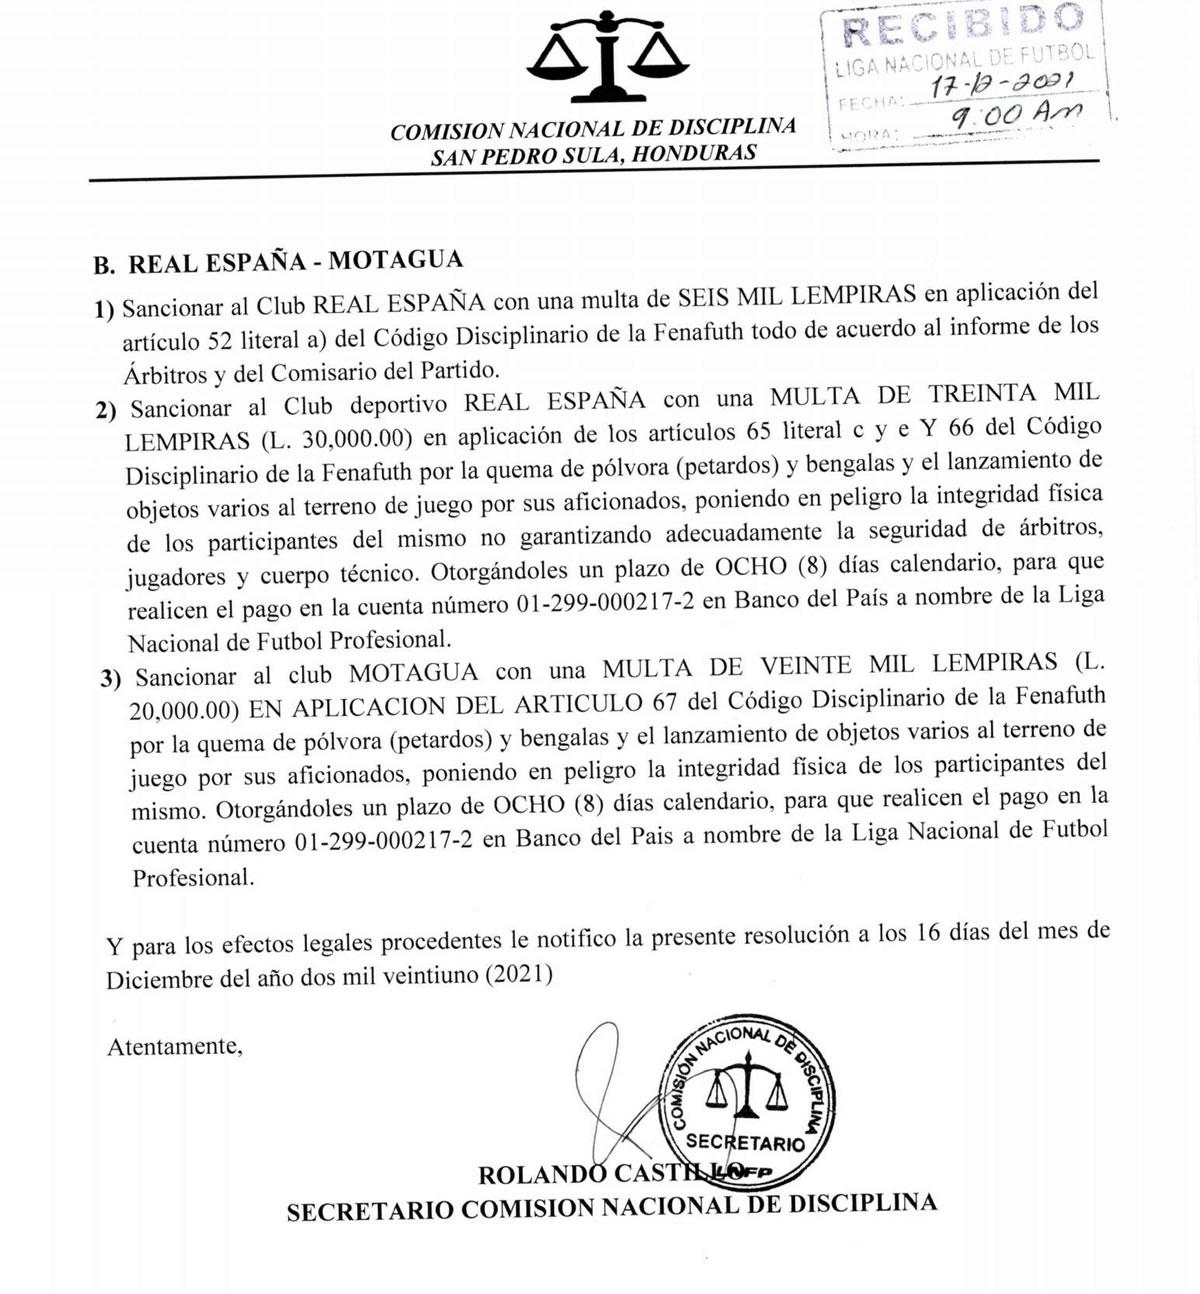 Las sanciones del otro partido Real España-Motagua.